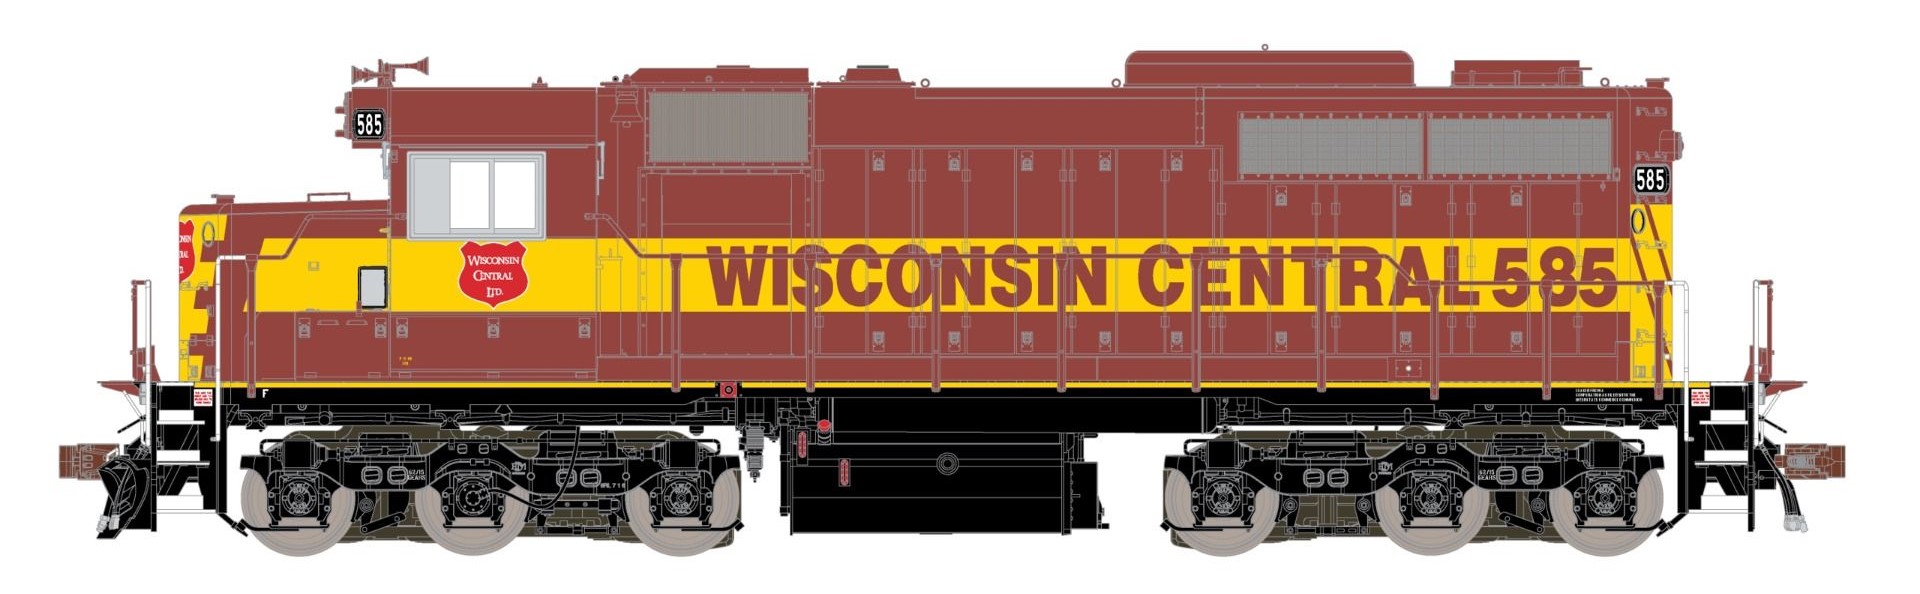 ScaleTrains Museum Quality HO SXT70079 DCC/ESU LokSound V5 Equipped EMD SDL39 Locomotive Wisconsin Central WC #589